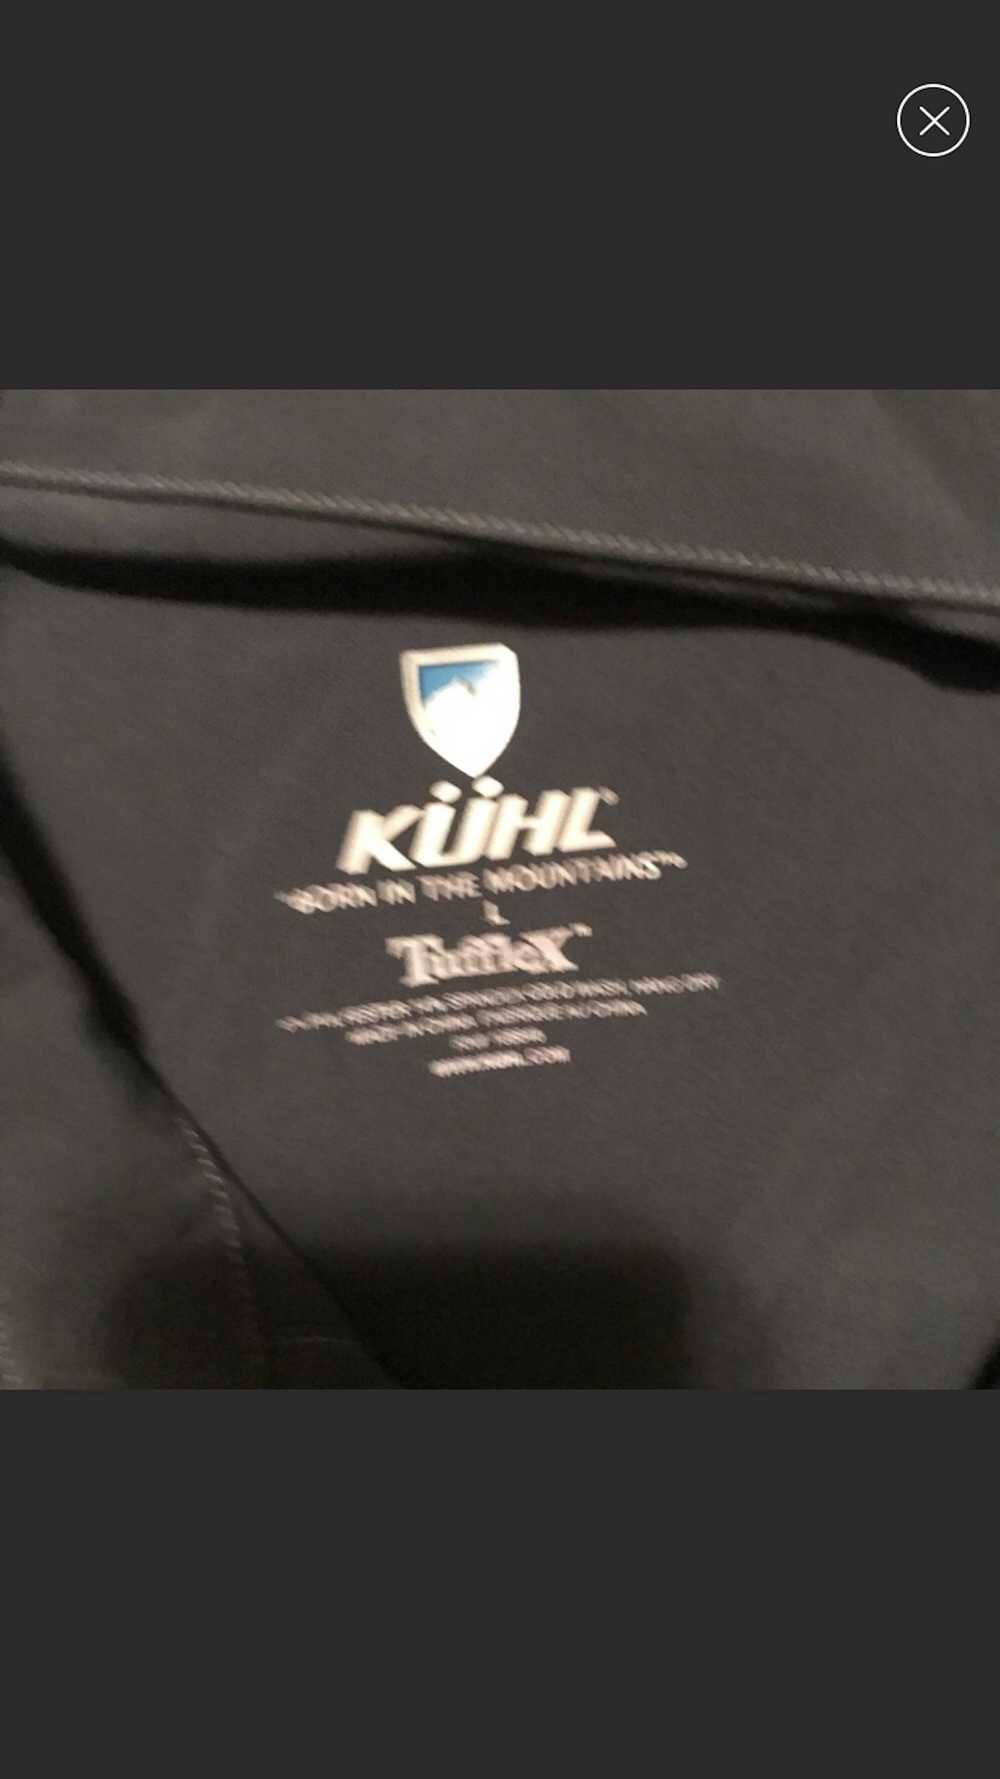 Kuhl Shirt - image 2